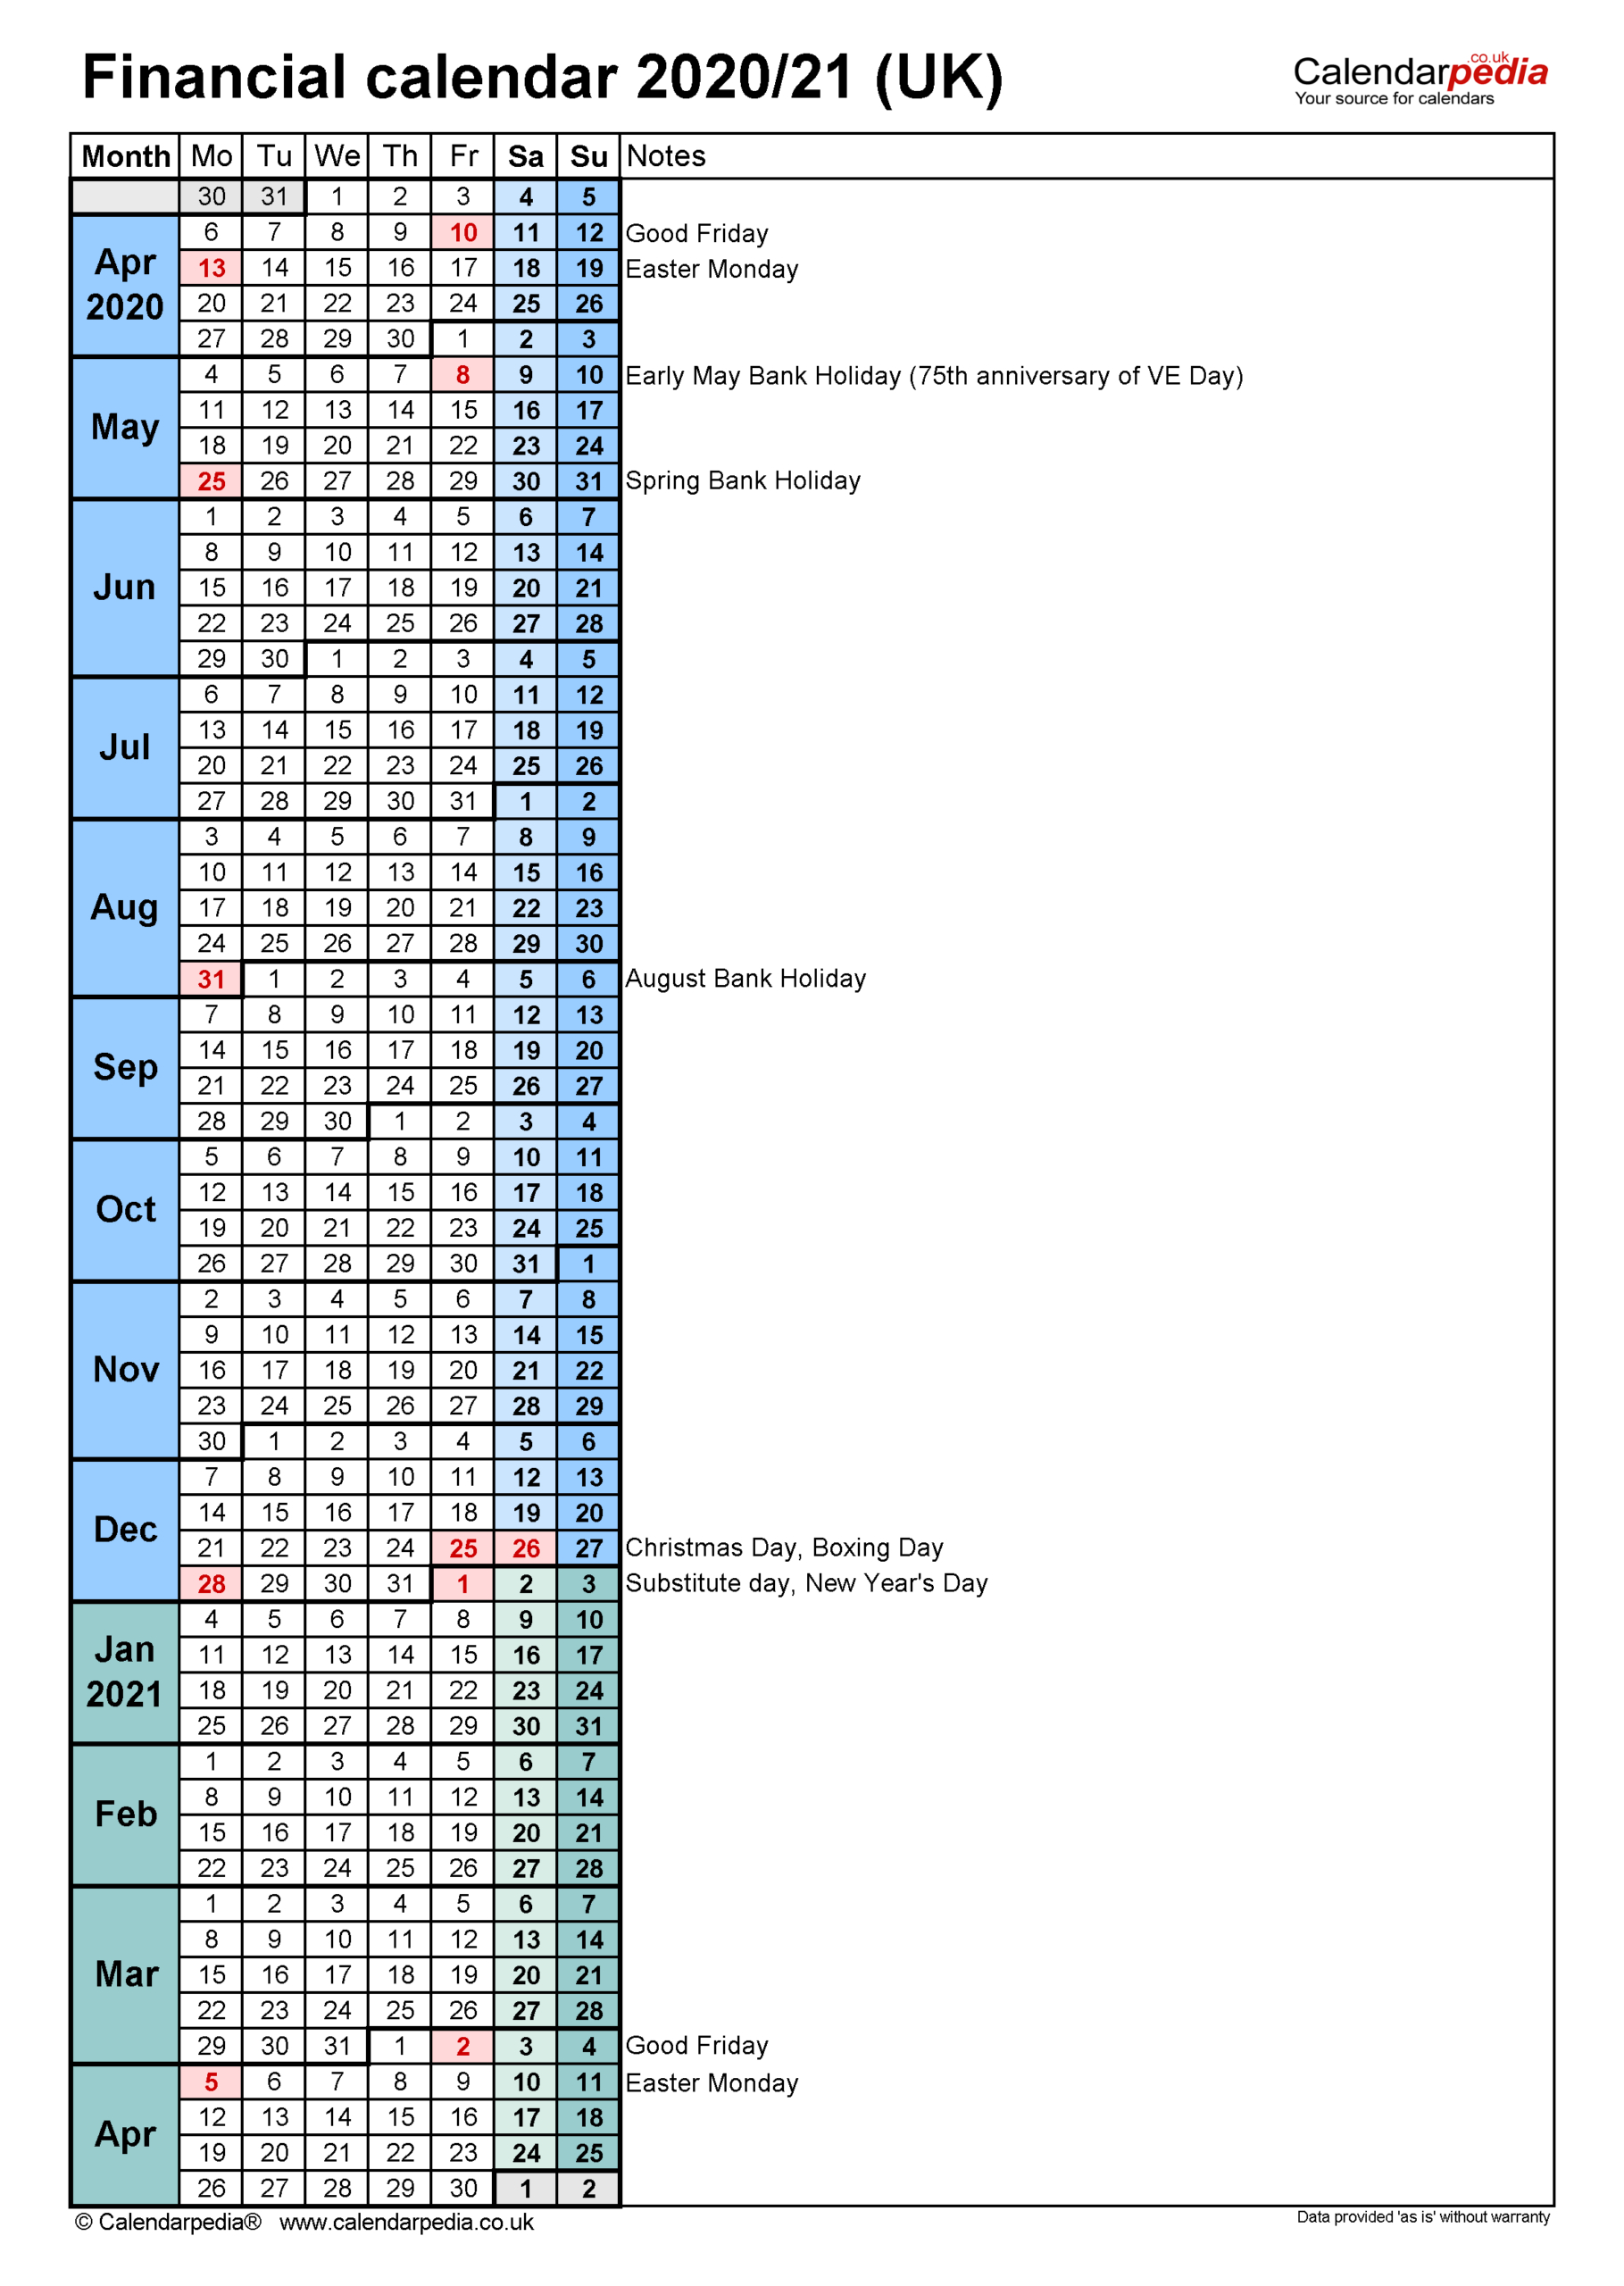 Hmrc 2021 Tax Week Calendar | Calendar Printables Free Blank  Depo Provera 13 Week Calendar